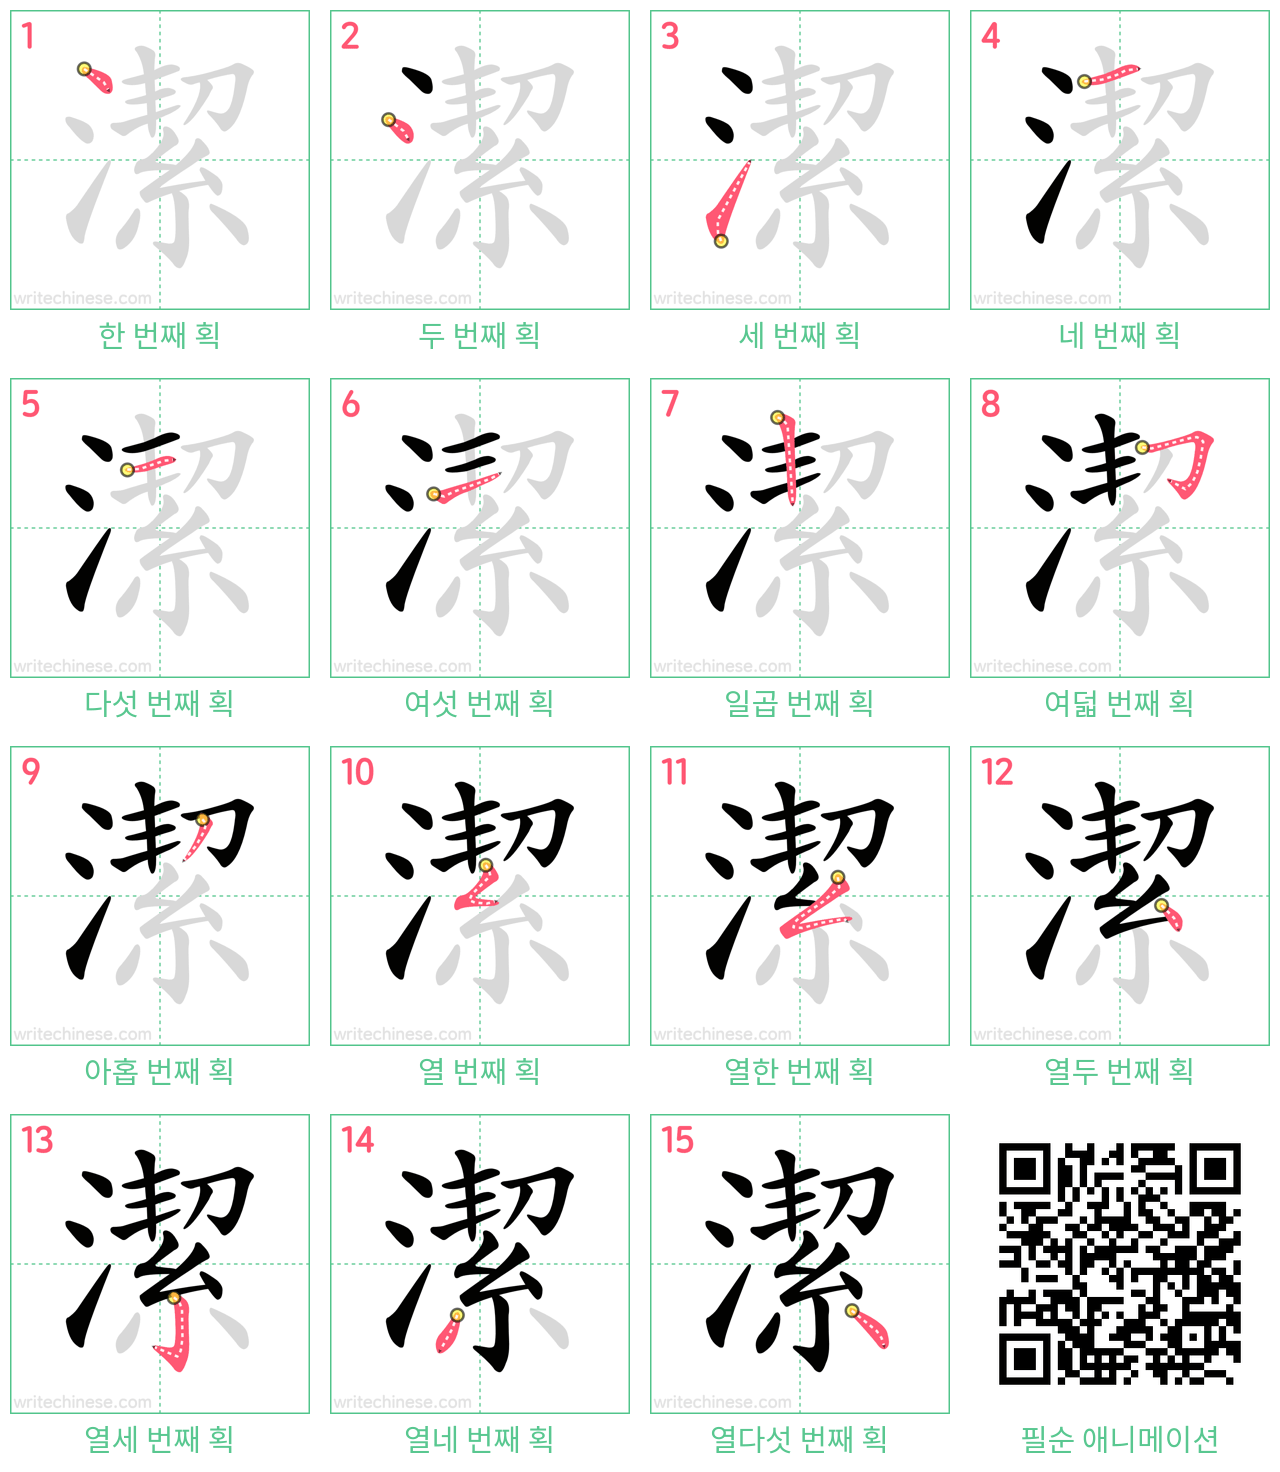 潔 step-by-step stroke order diagrams